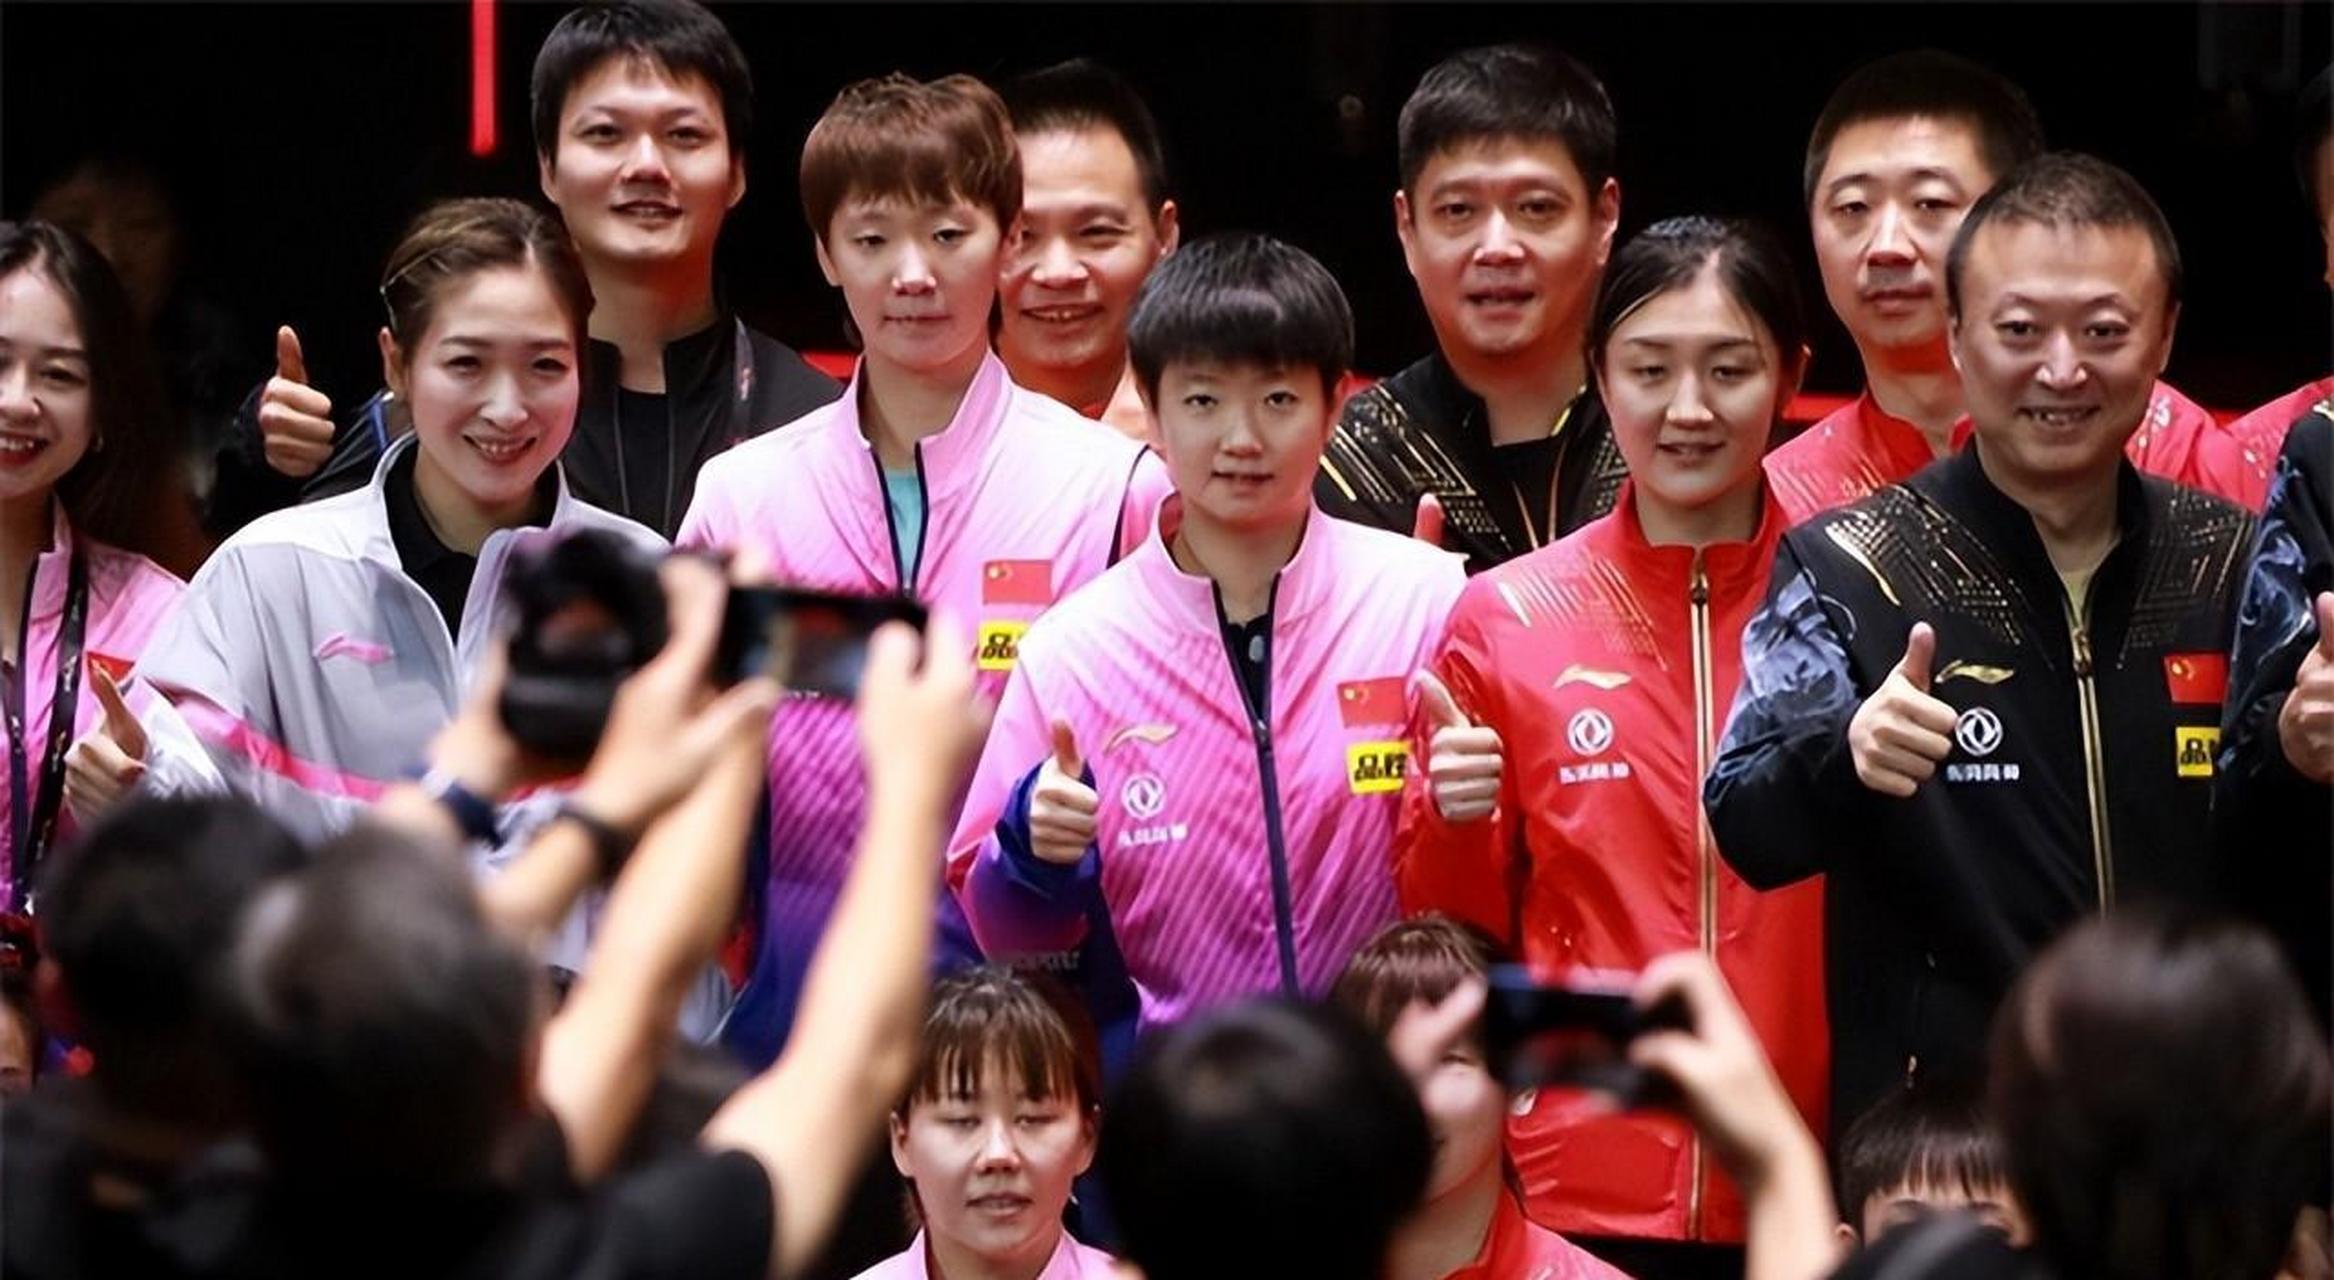 5月14日,一则新闻和很多照片爆出来,中国乒乓球国家队瞬间冲上热搜